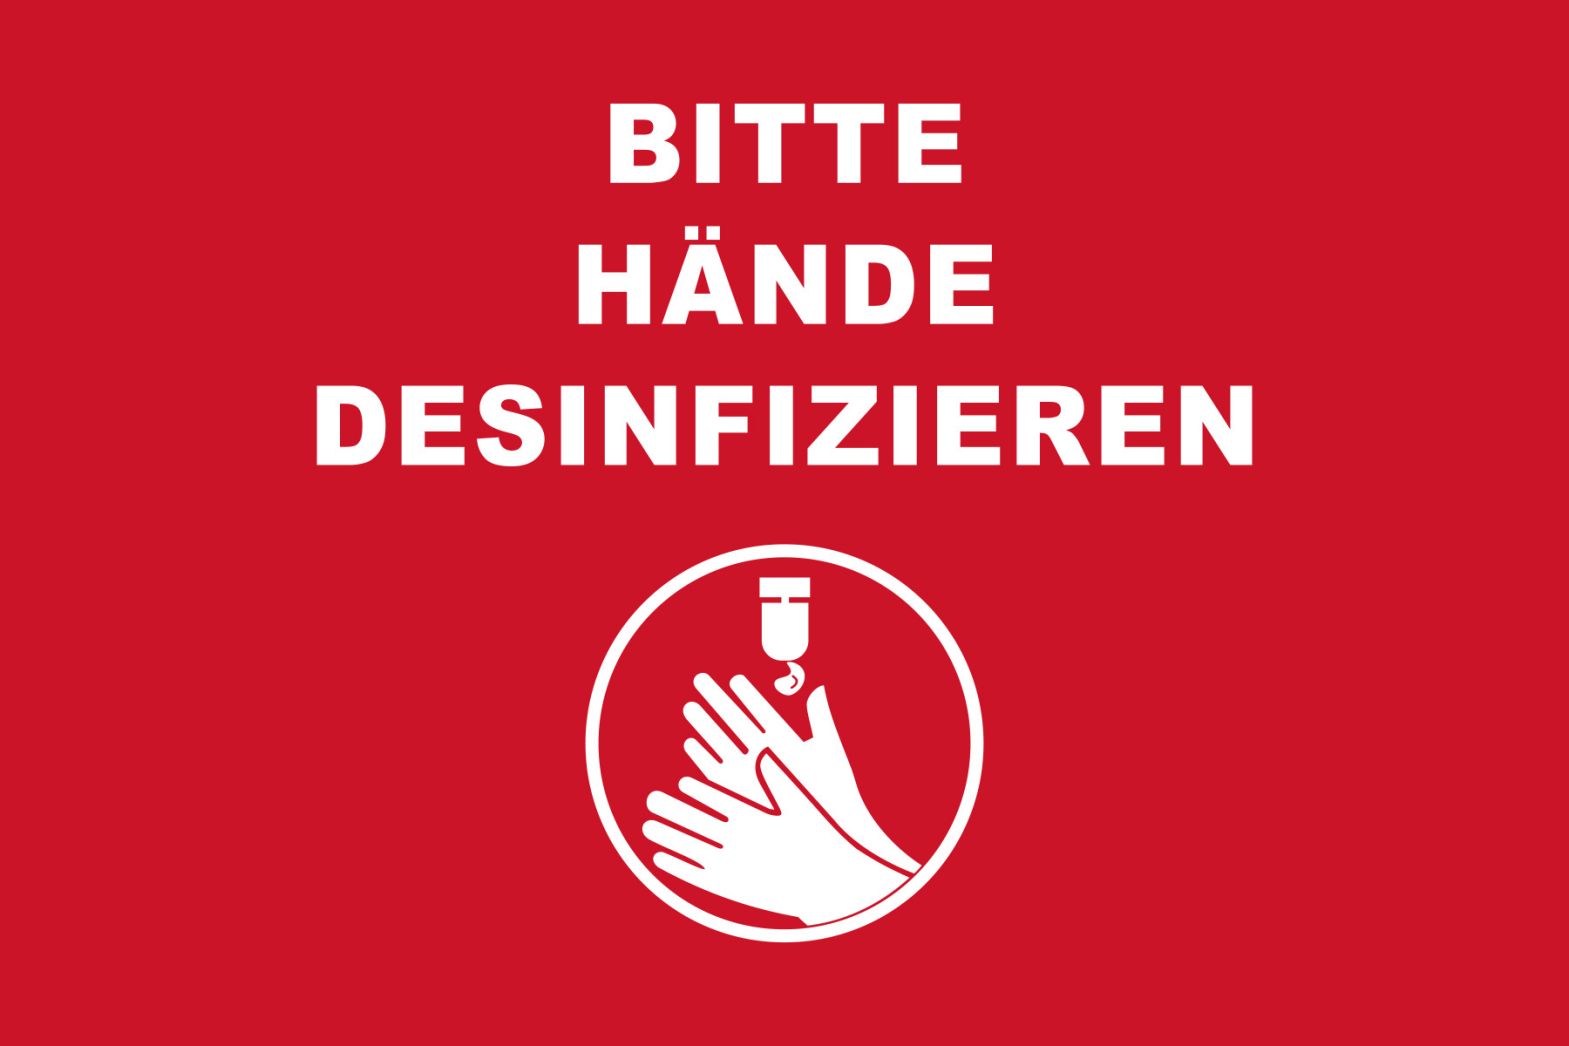 Hygienehinweis-Fußmatte mit deutlichen Hände-desinfizieren-Hinweis